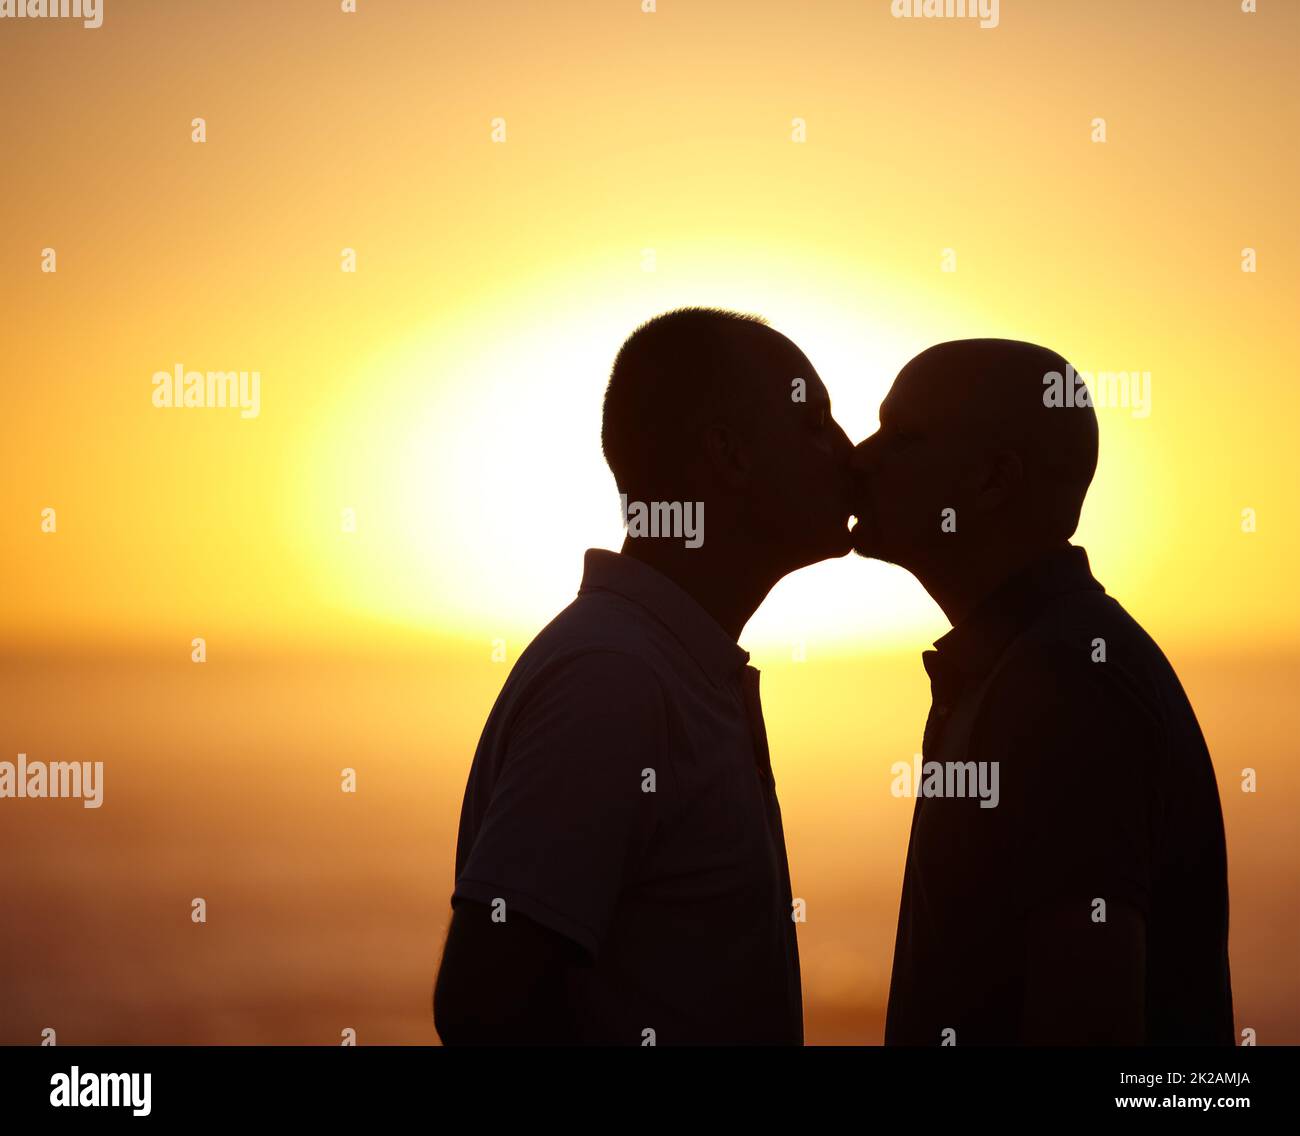 Glückselige Sonnenuntergang Kuss - Homosexuell paar. Sihlouette Porträt eines homosexuellen Paares, das sich vor einem Sonnenuntergang küsst - Copyspace. Stockfoto